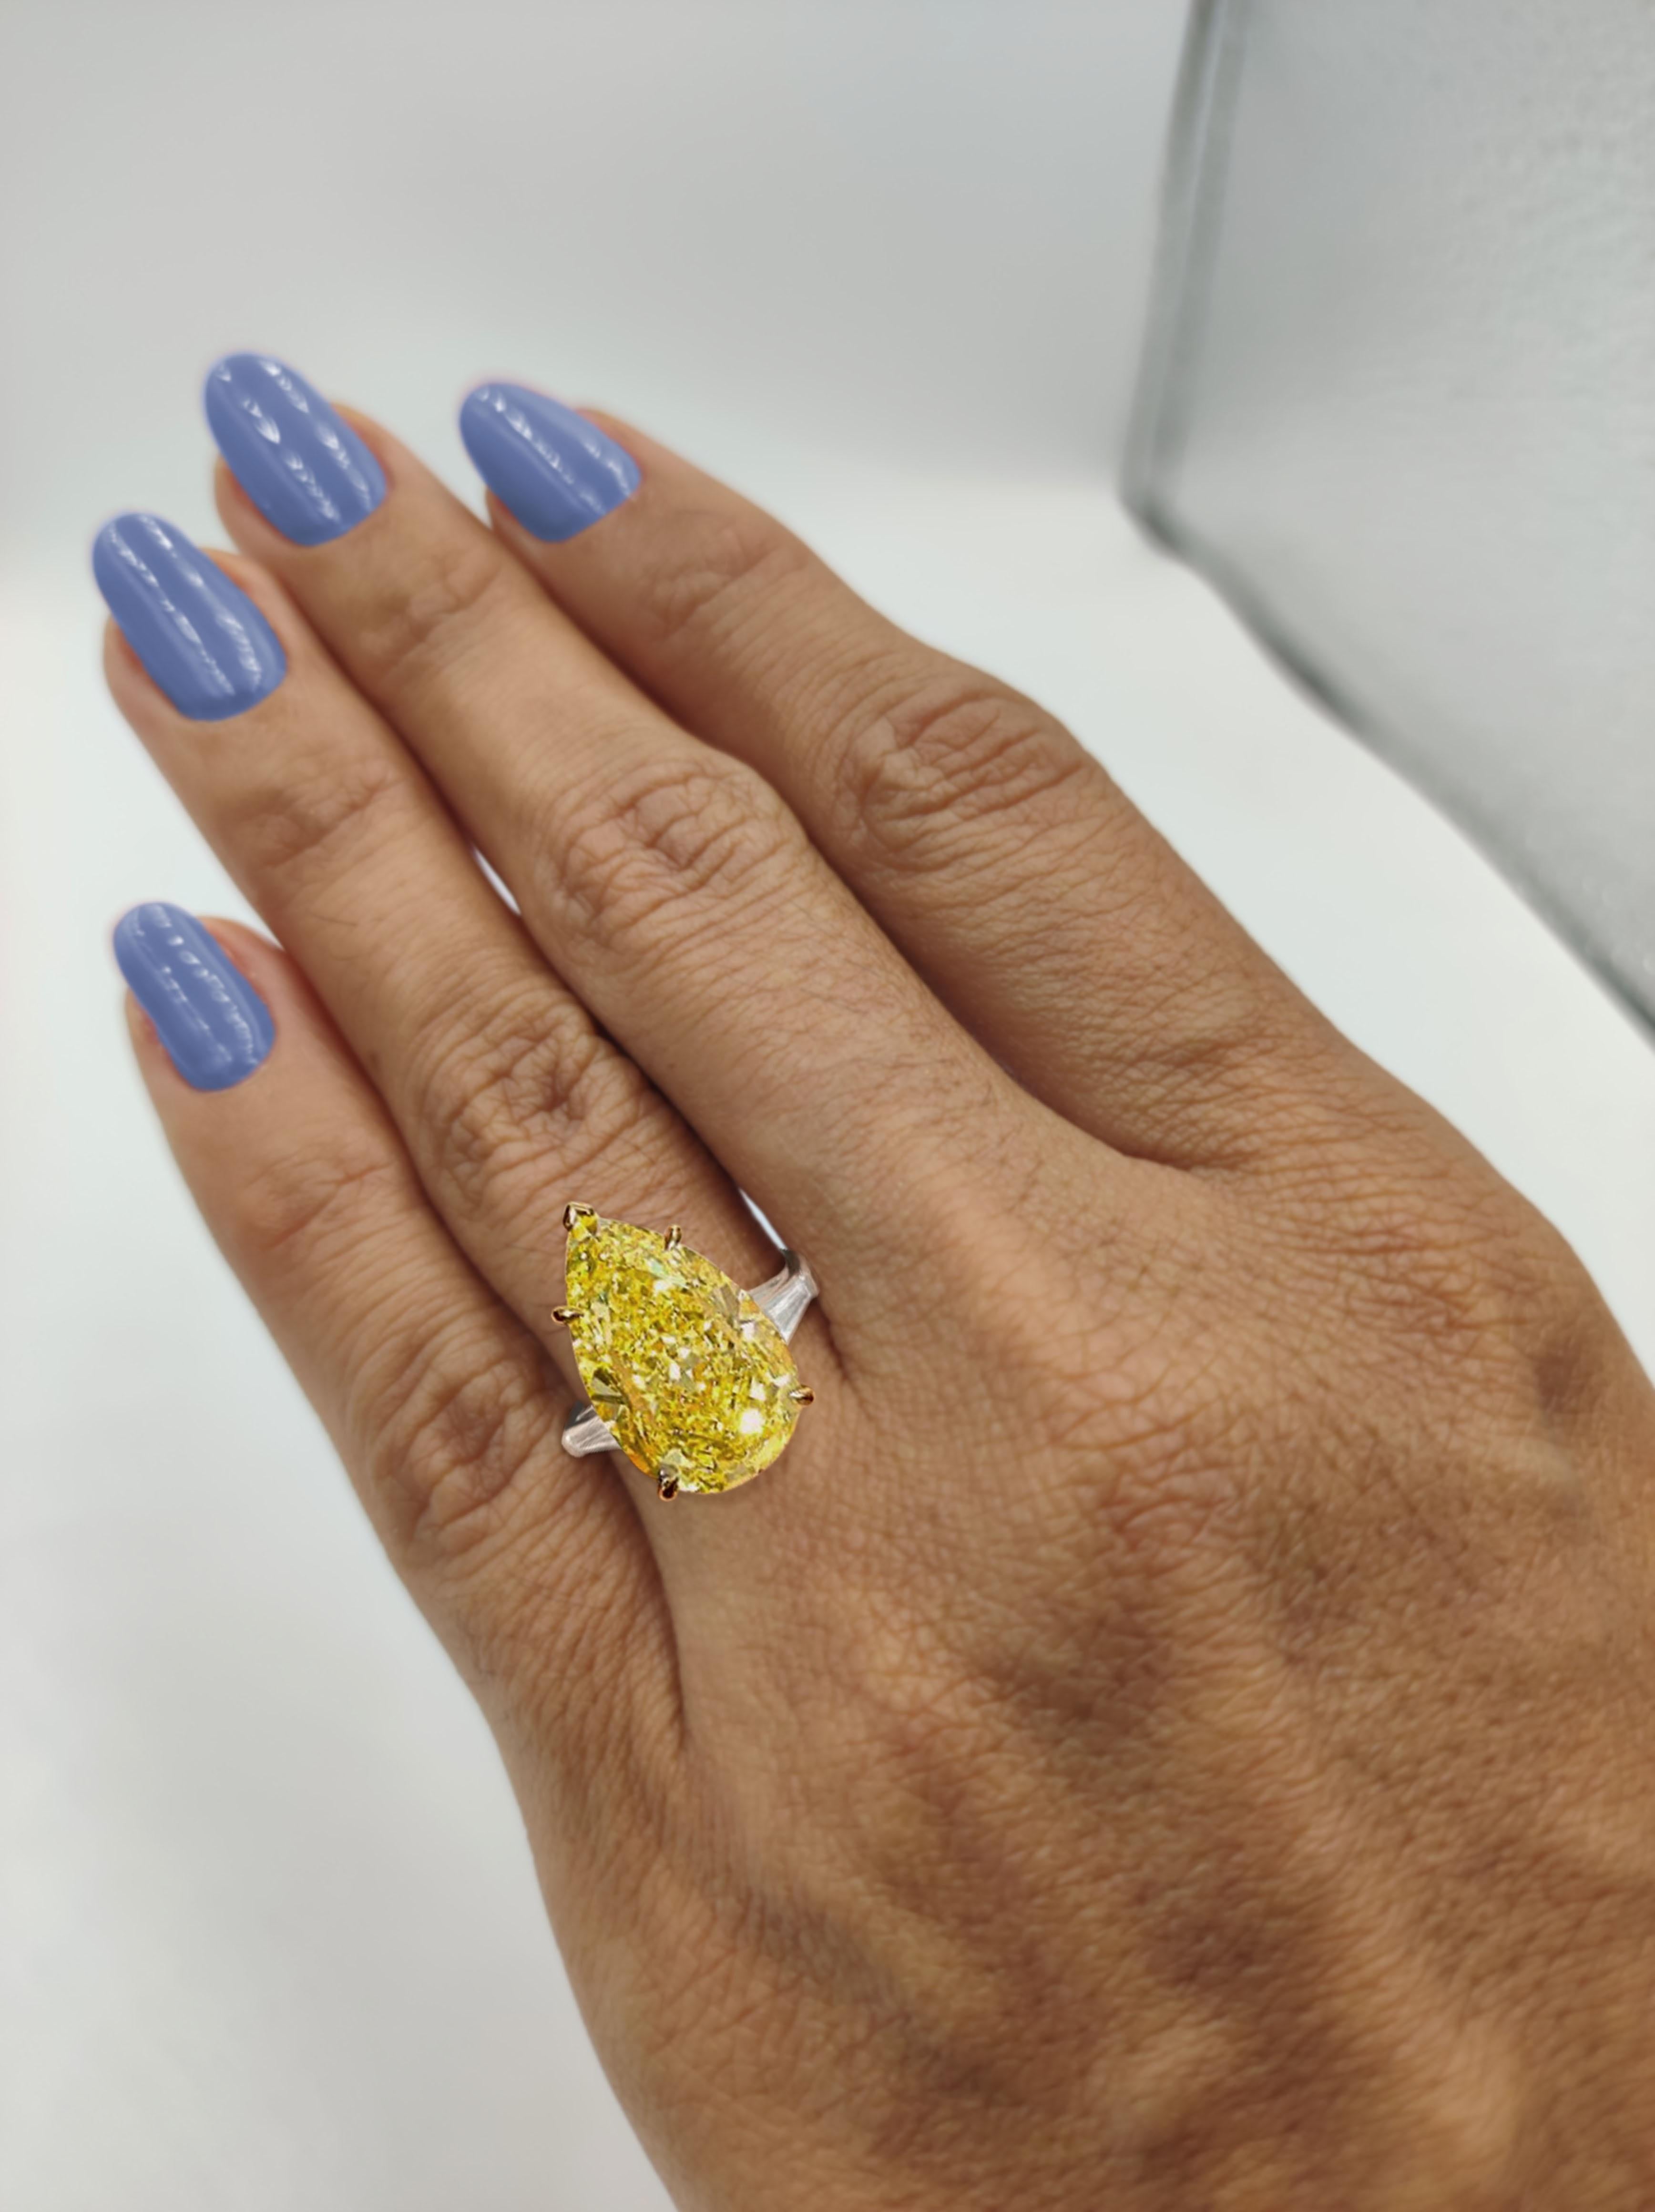 Atemberaubende fancy intensiv gelben Diamanten (sieht fancy lebendig in den Ring) mit weißen Diamanten Doppel Halo Korb, GIA zertifiziert. Hochwertige Schmuckstücke von Antinori di Sanpietro ROMA
8,25 Karat Gesamtgewicht der Diamanten.
0,80 Karat